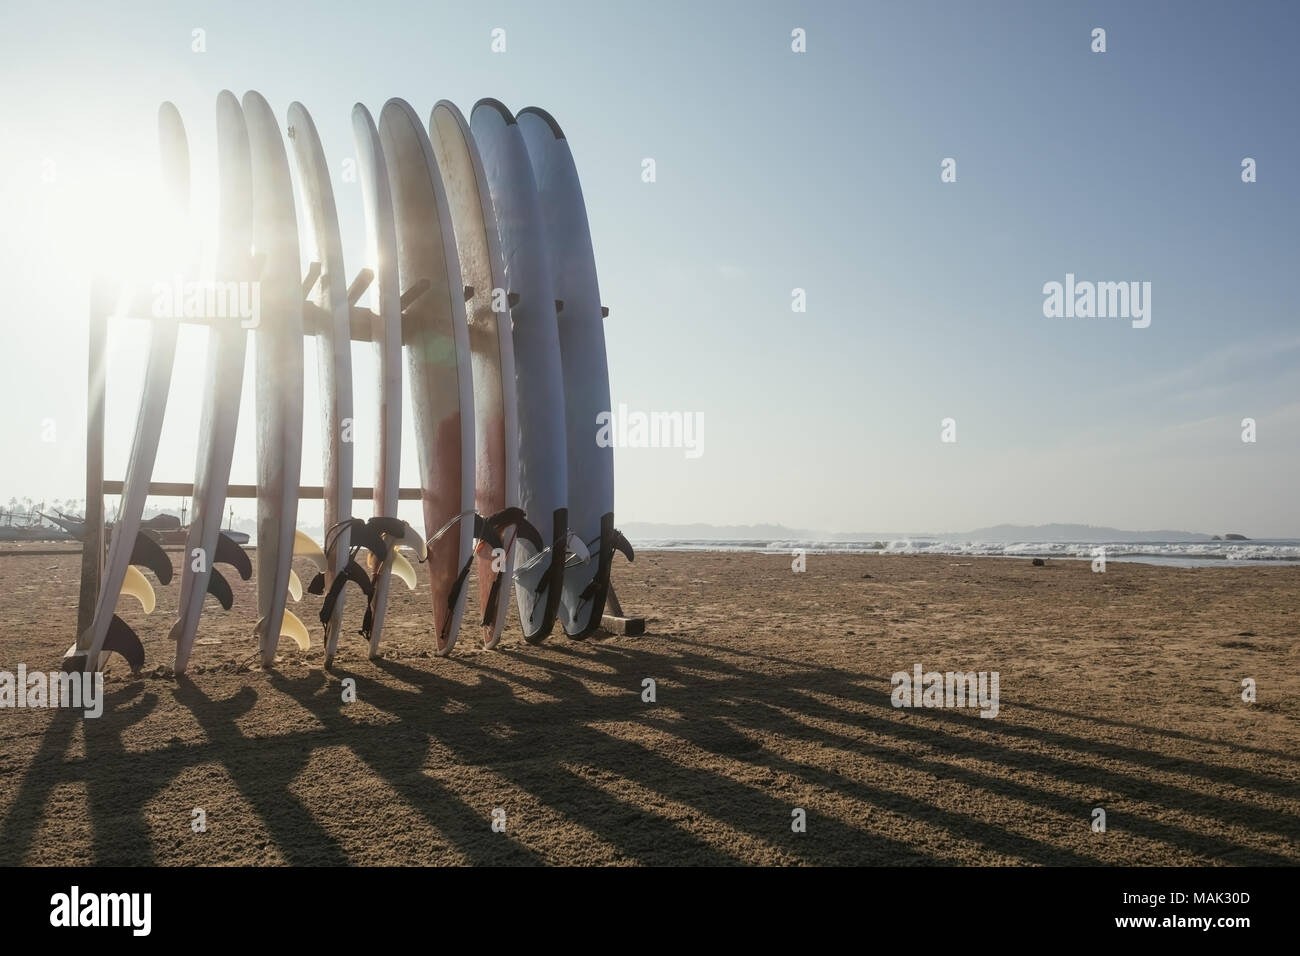 Varie tavole lunghe per il surf in piedi sulla spiaggia di mattina. Concetto di active sport durante le vacanze Foto Stock